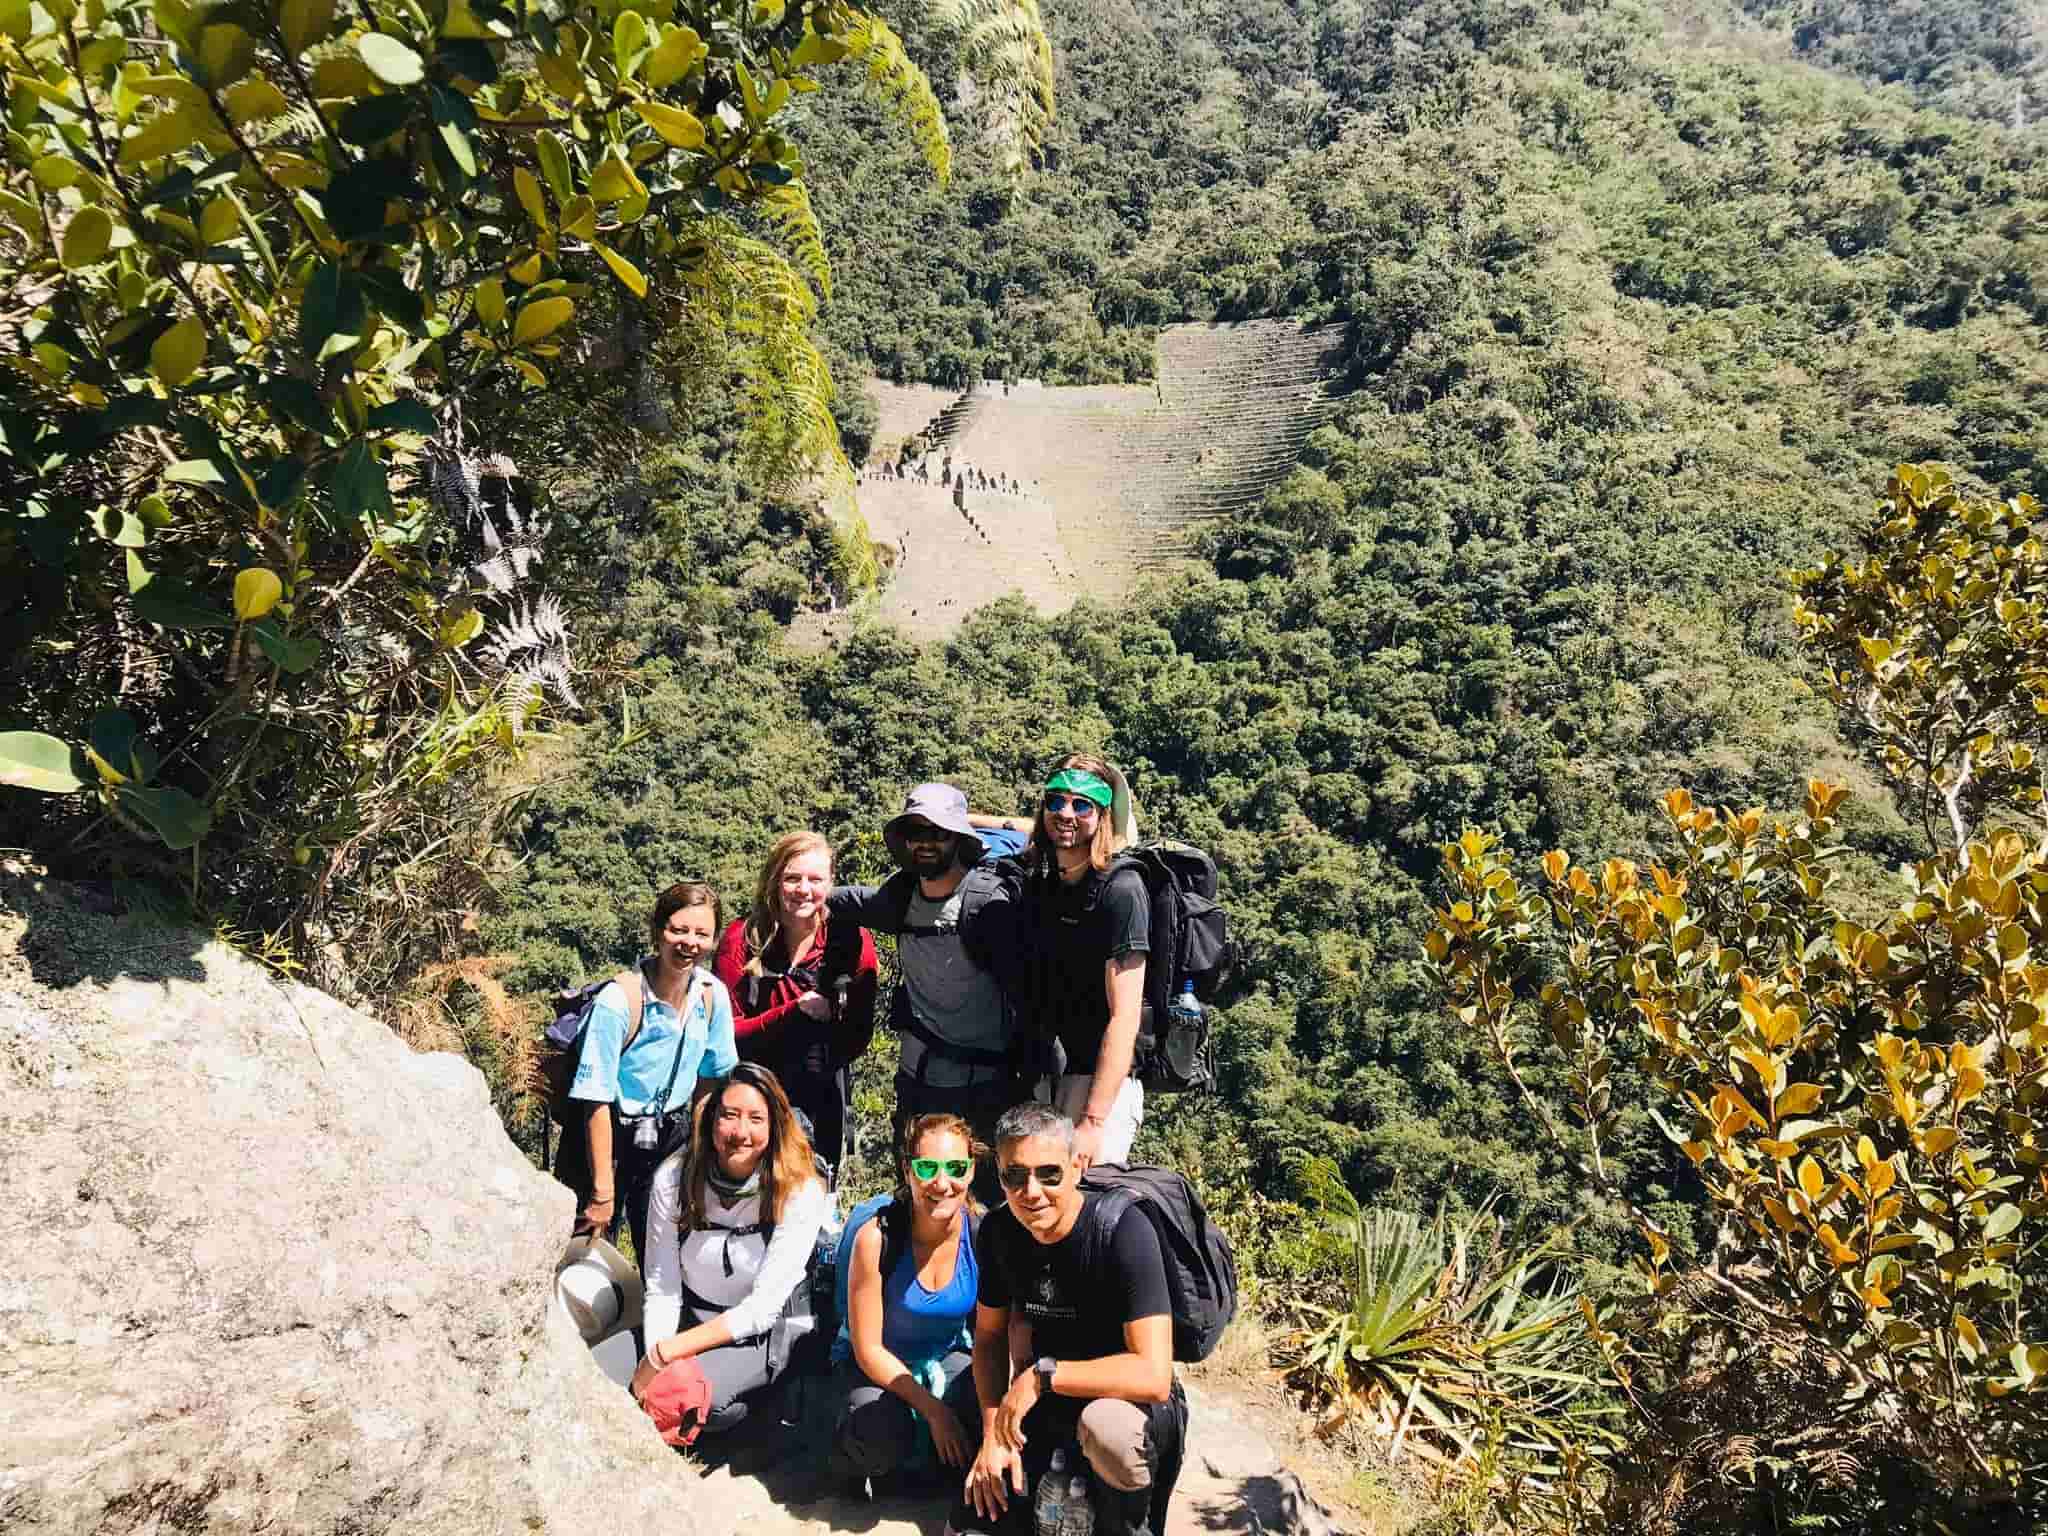 Visitantes parando para la foto - Camino Inca 2 dias a Machu Picchu